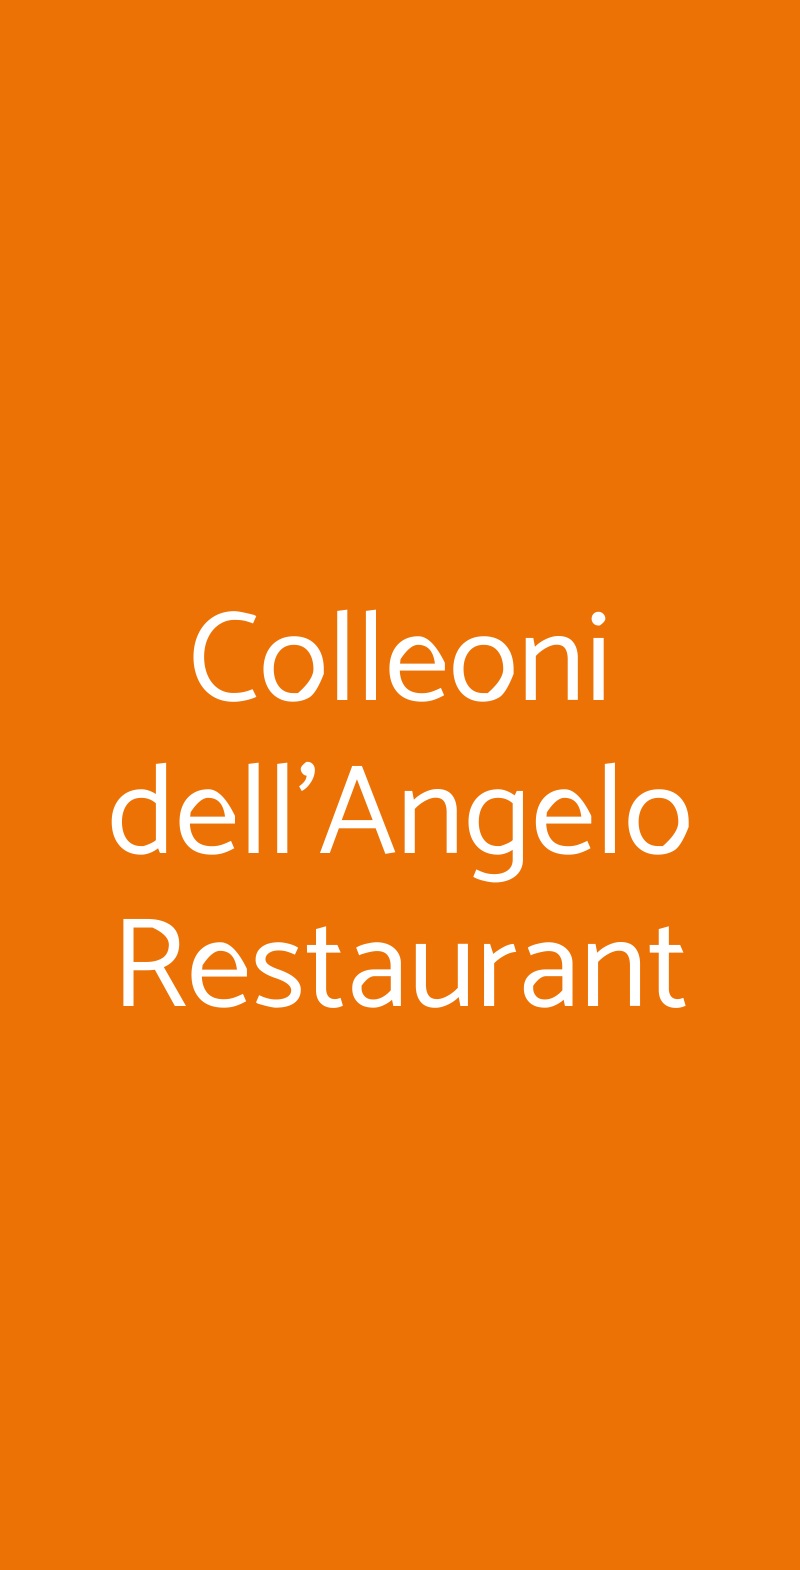 Colleoni dell'Angelo Restaurant Bergamo menù 1 pagina